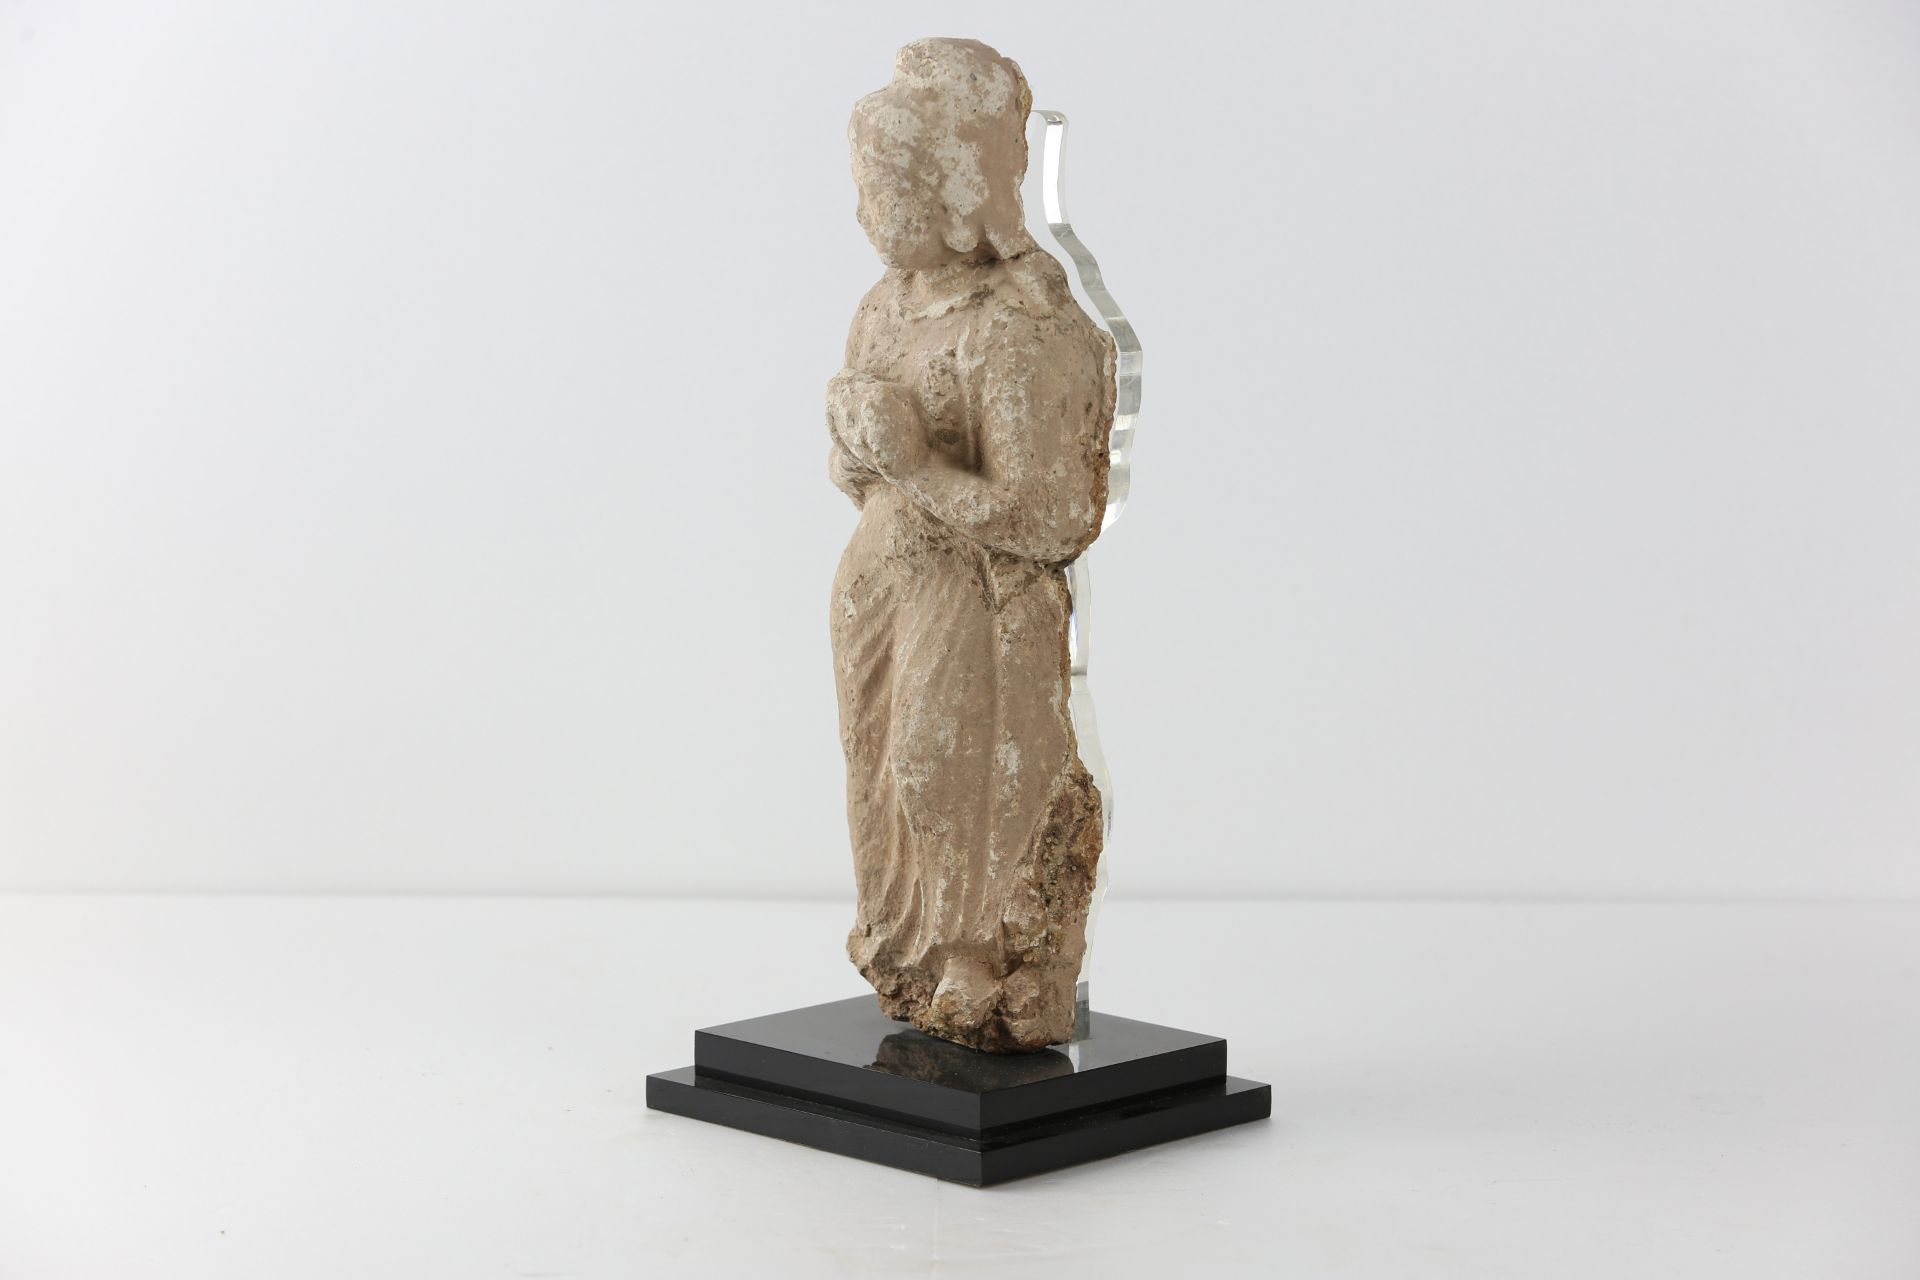 Tanagra debout vêtue d'une toge Stuc Grèce 3 eme siècle avant JC 31cm - Bild 3 aus 3